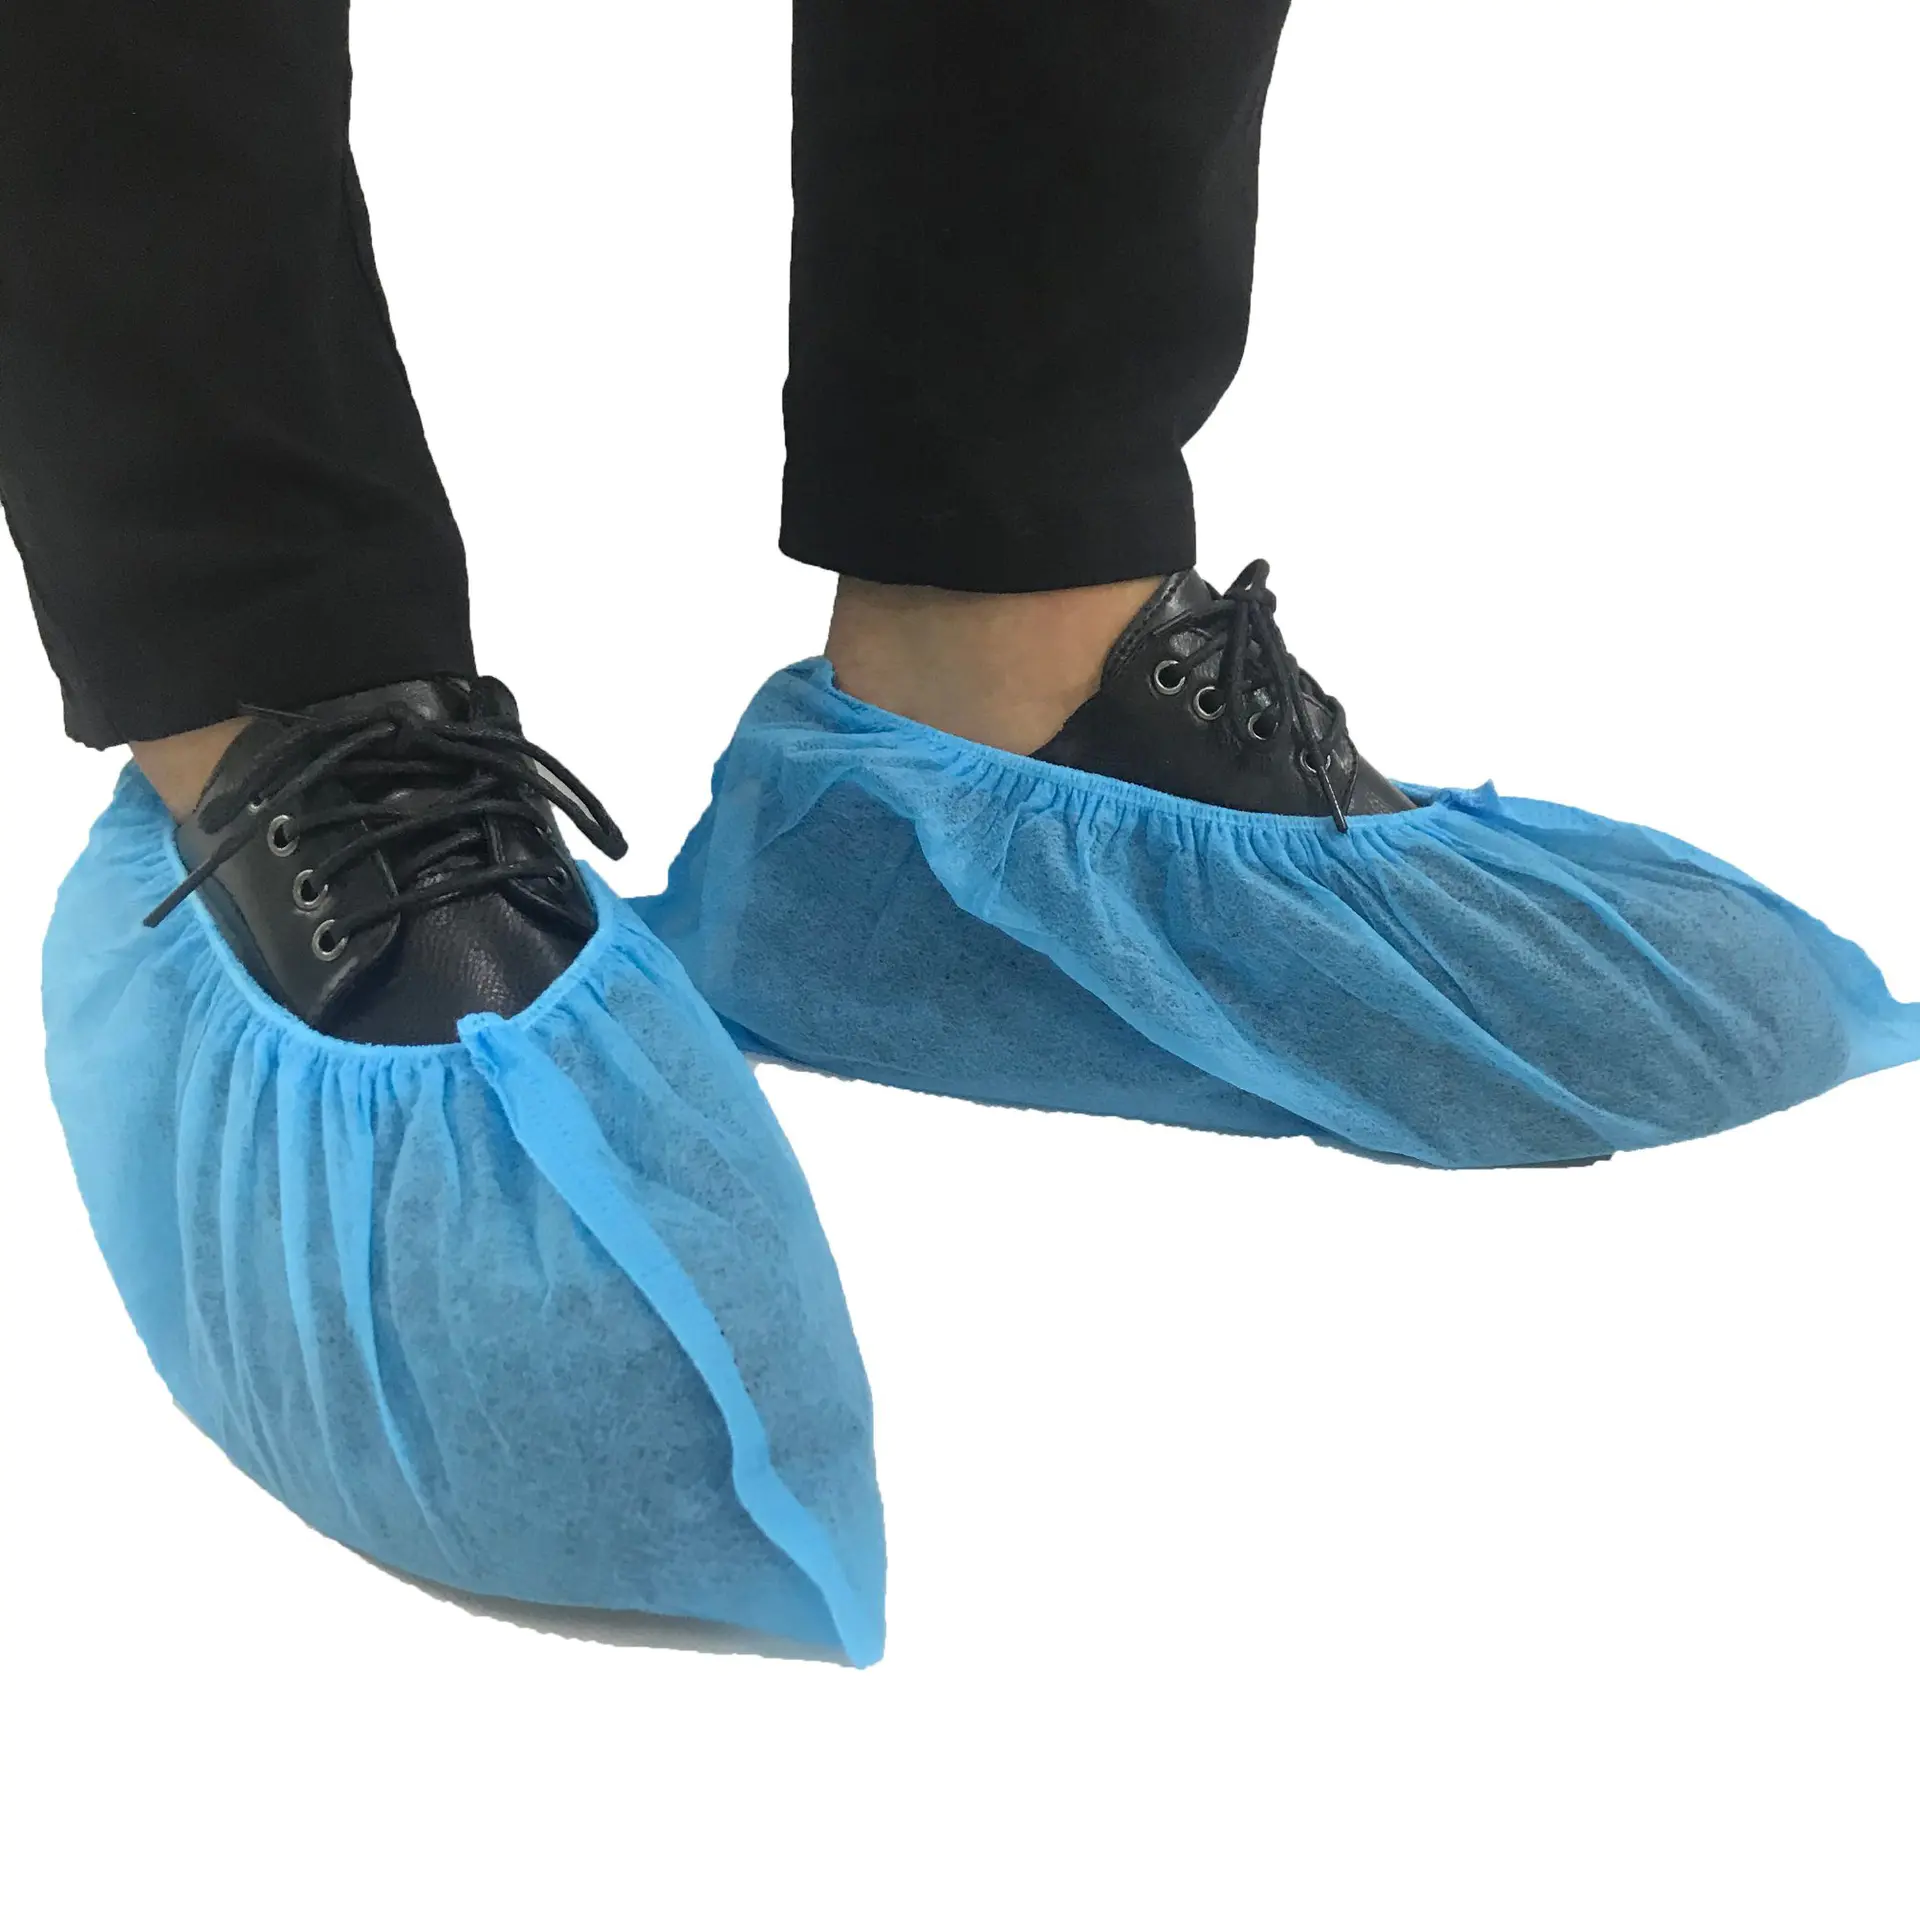 Polypropylene Non-Woven Fabric for Shoe Cover